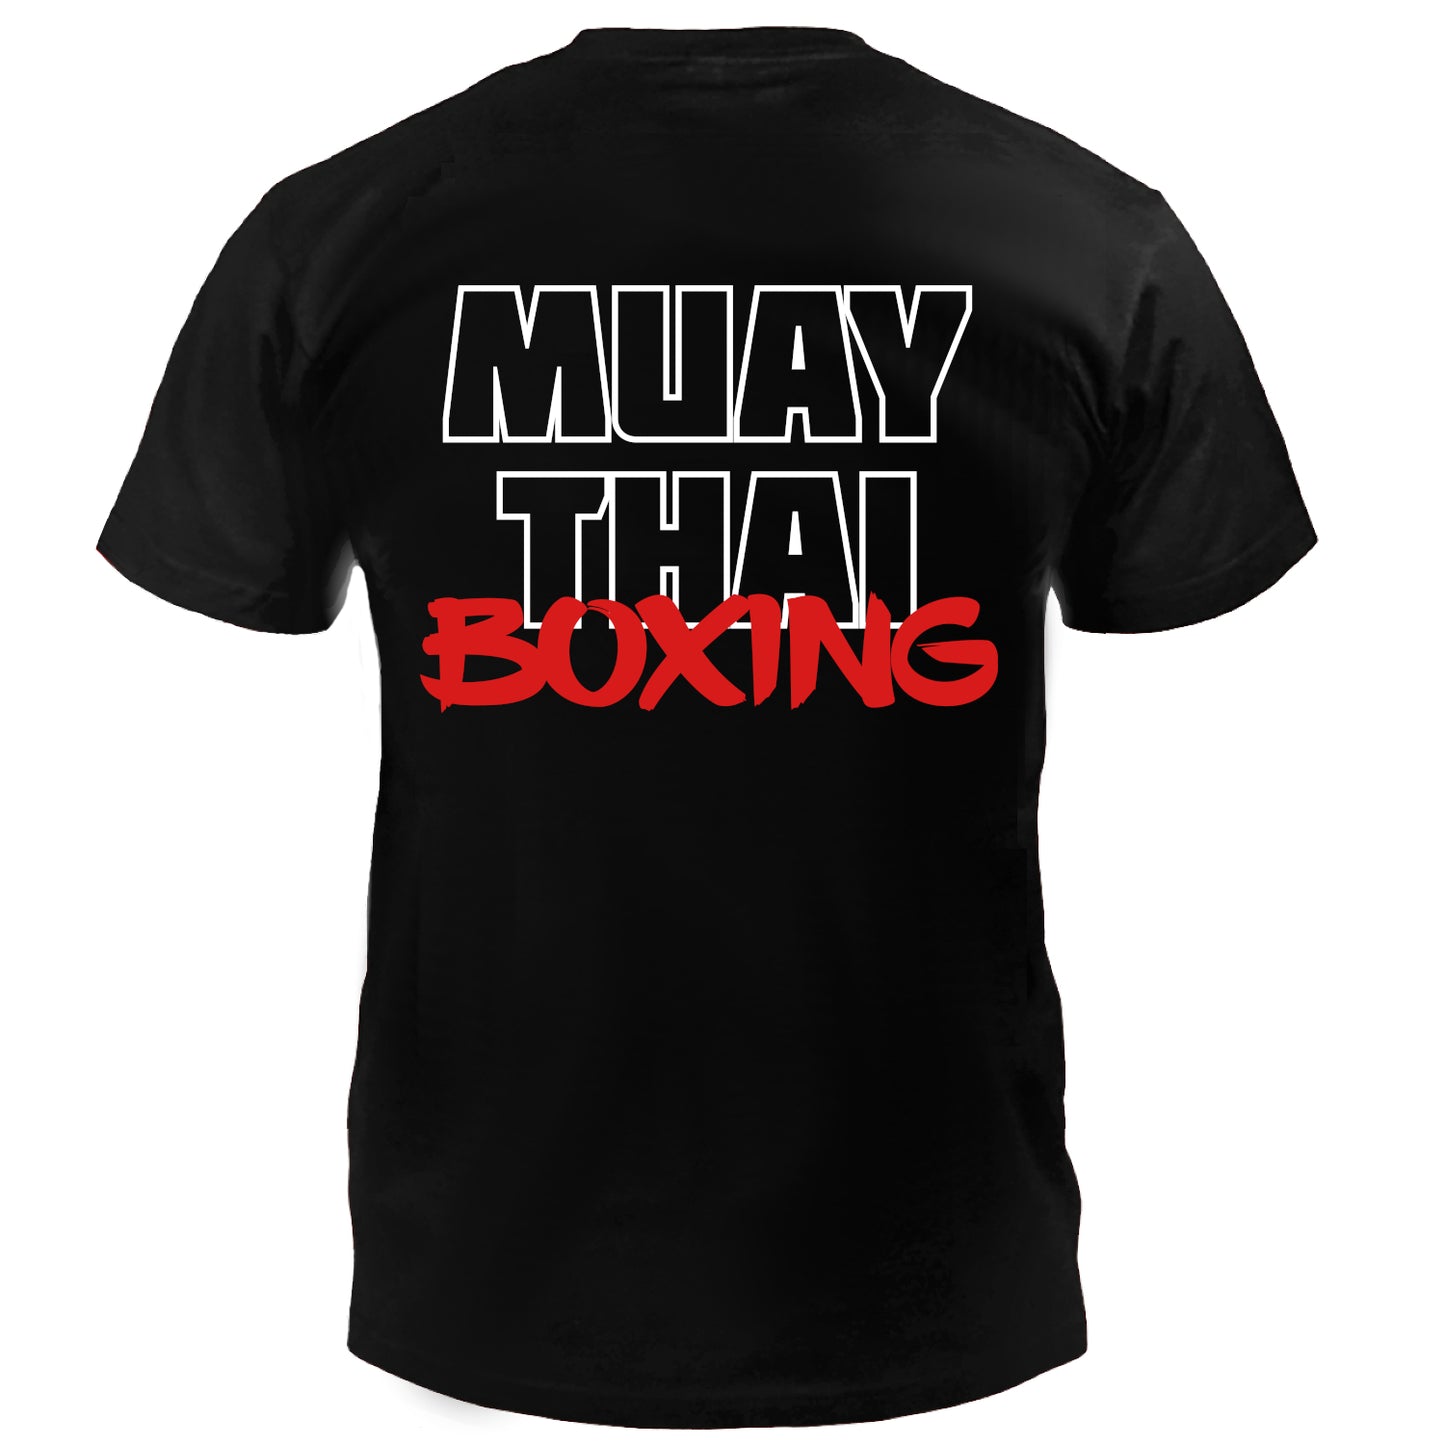 Dynamix Athletics T-Shirt Muay Thai Life - Schwarz